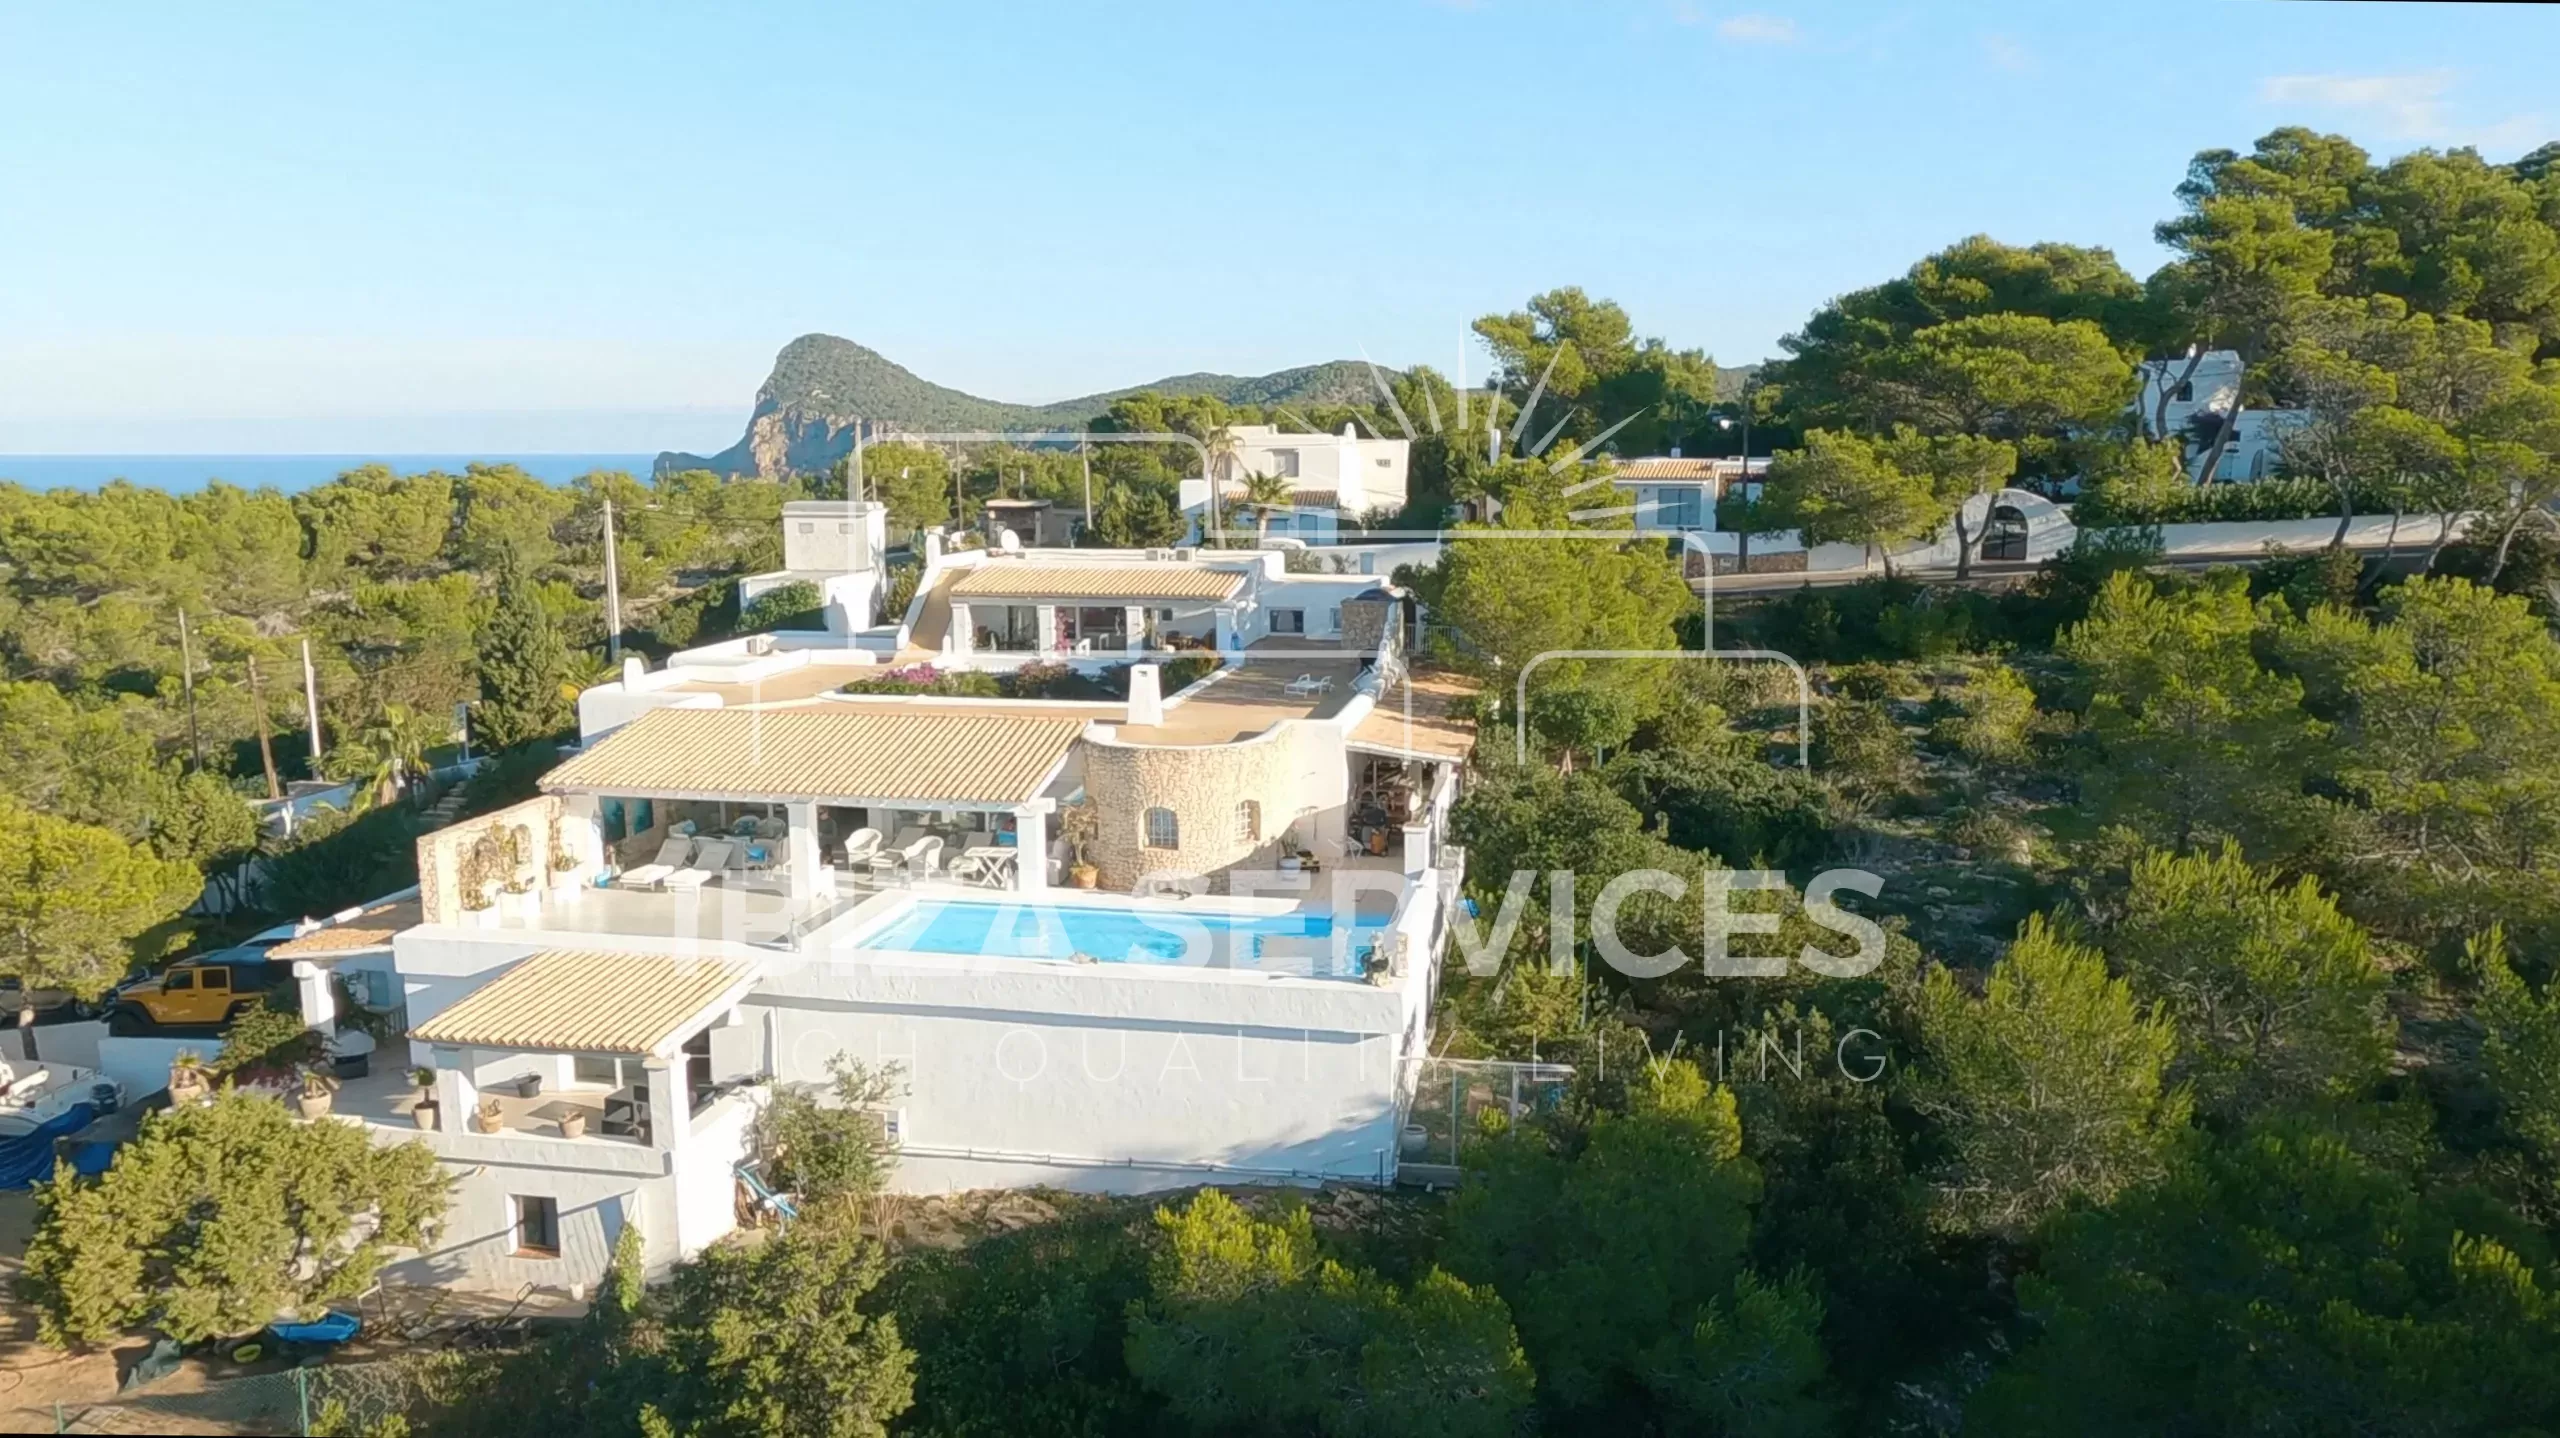 Betoverende villa met groot zwembad en prachtig uitzicht op zee en zonsondergang te koop.